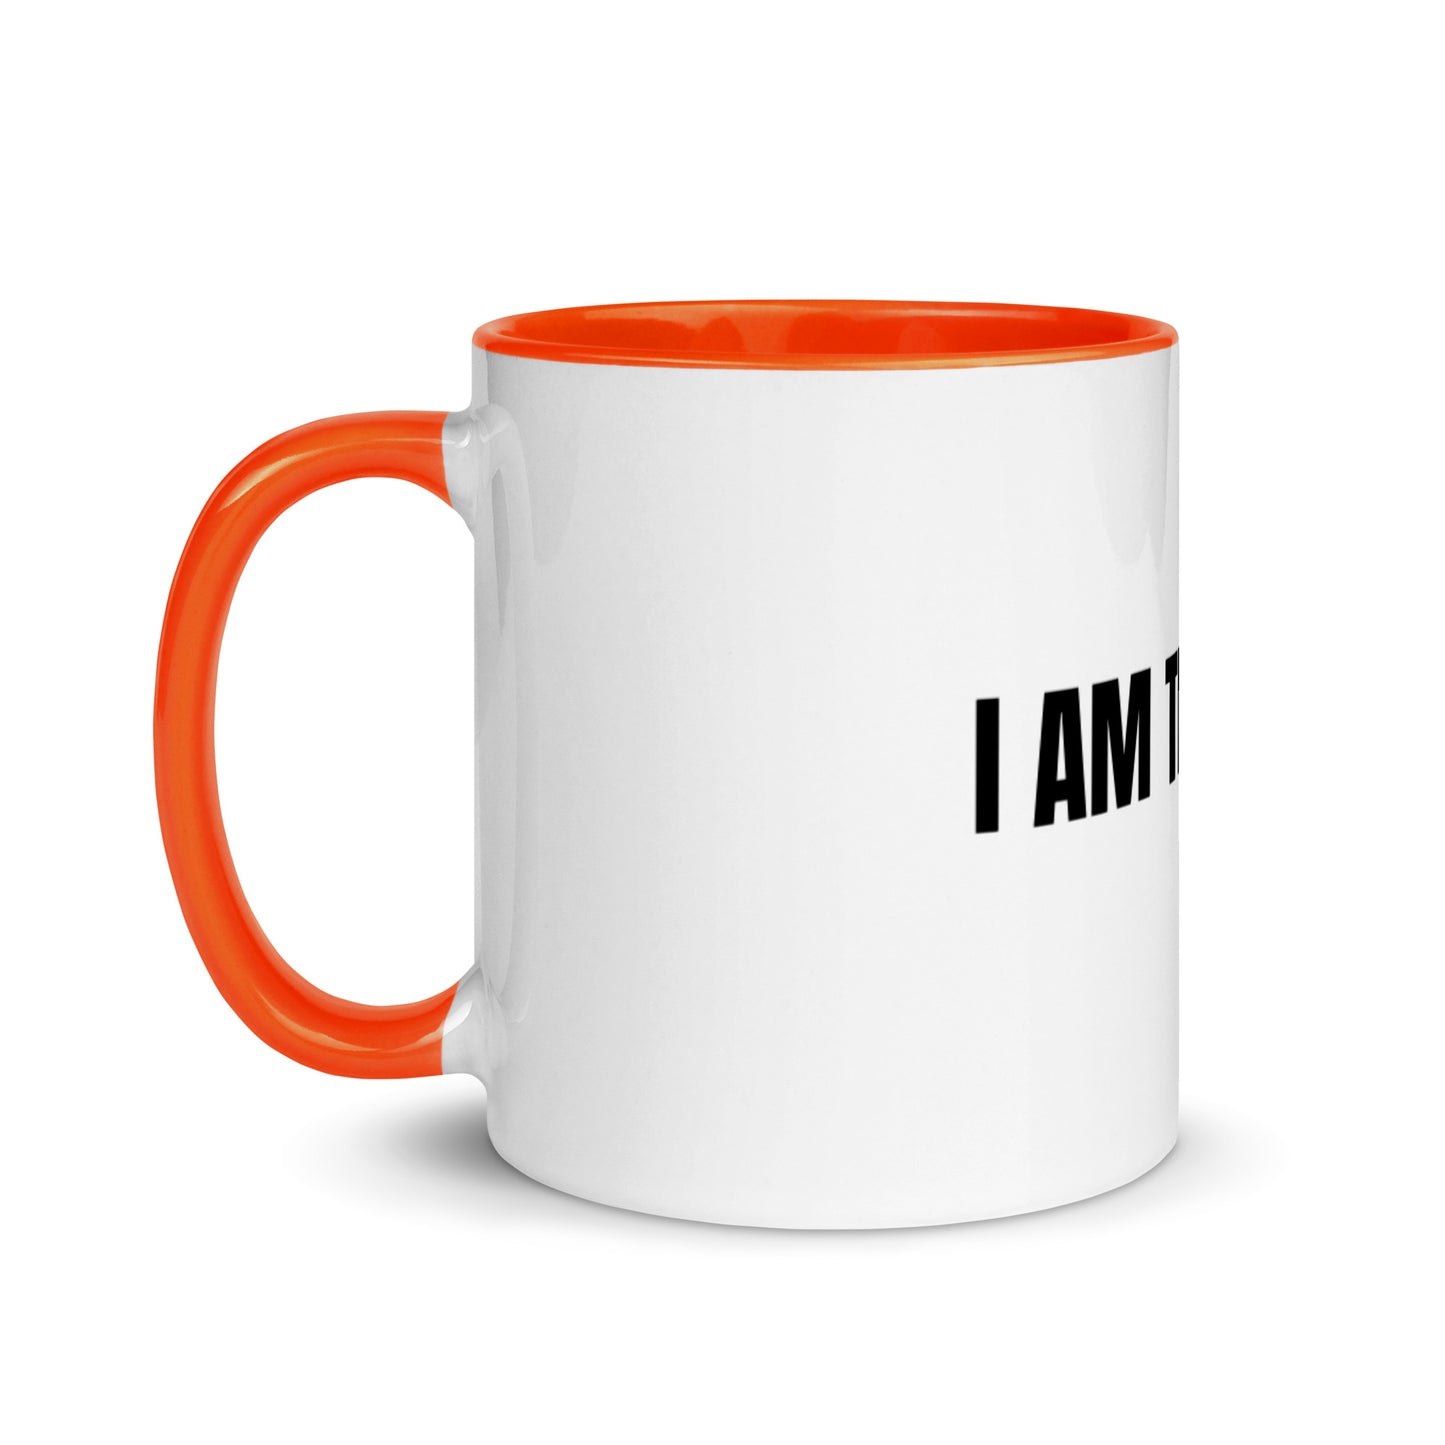 I Am The I Am White Ceramic Mug with Color Inside